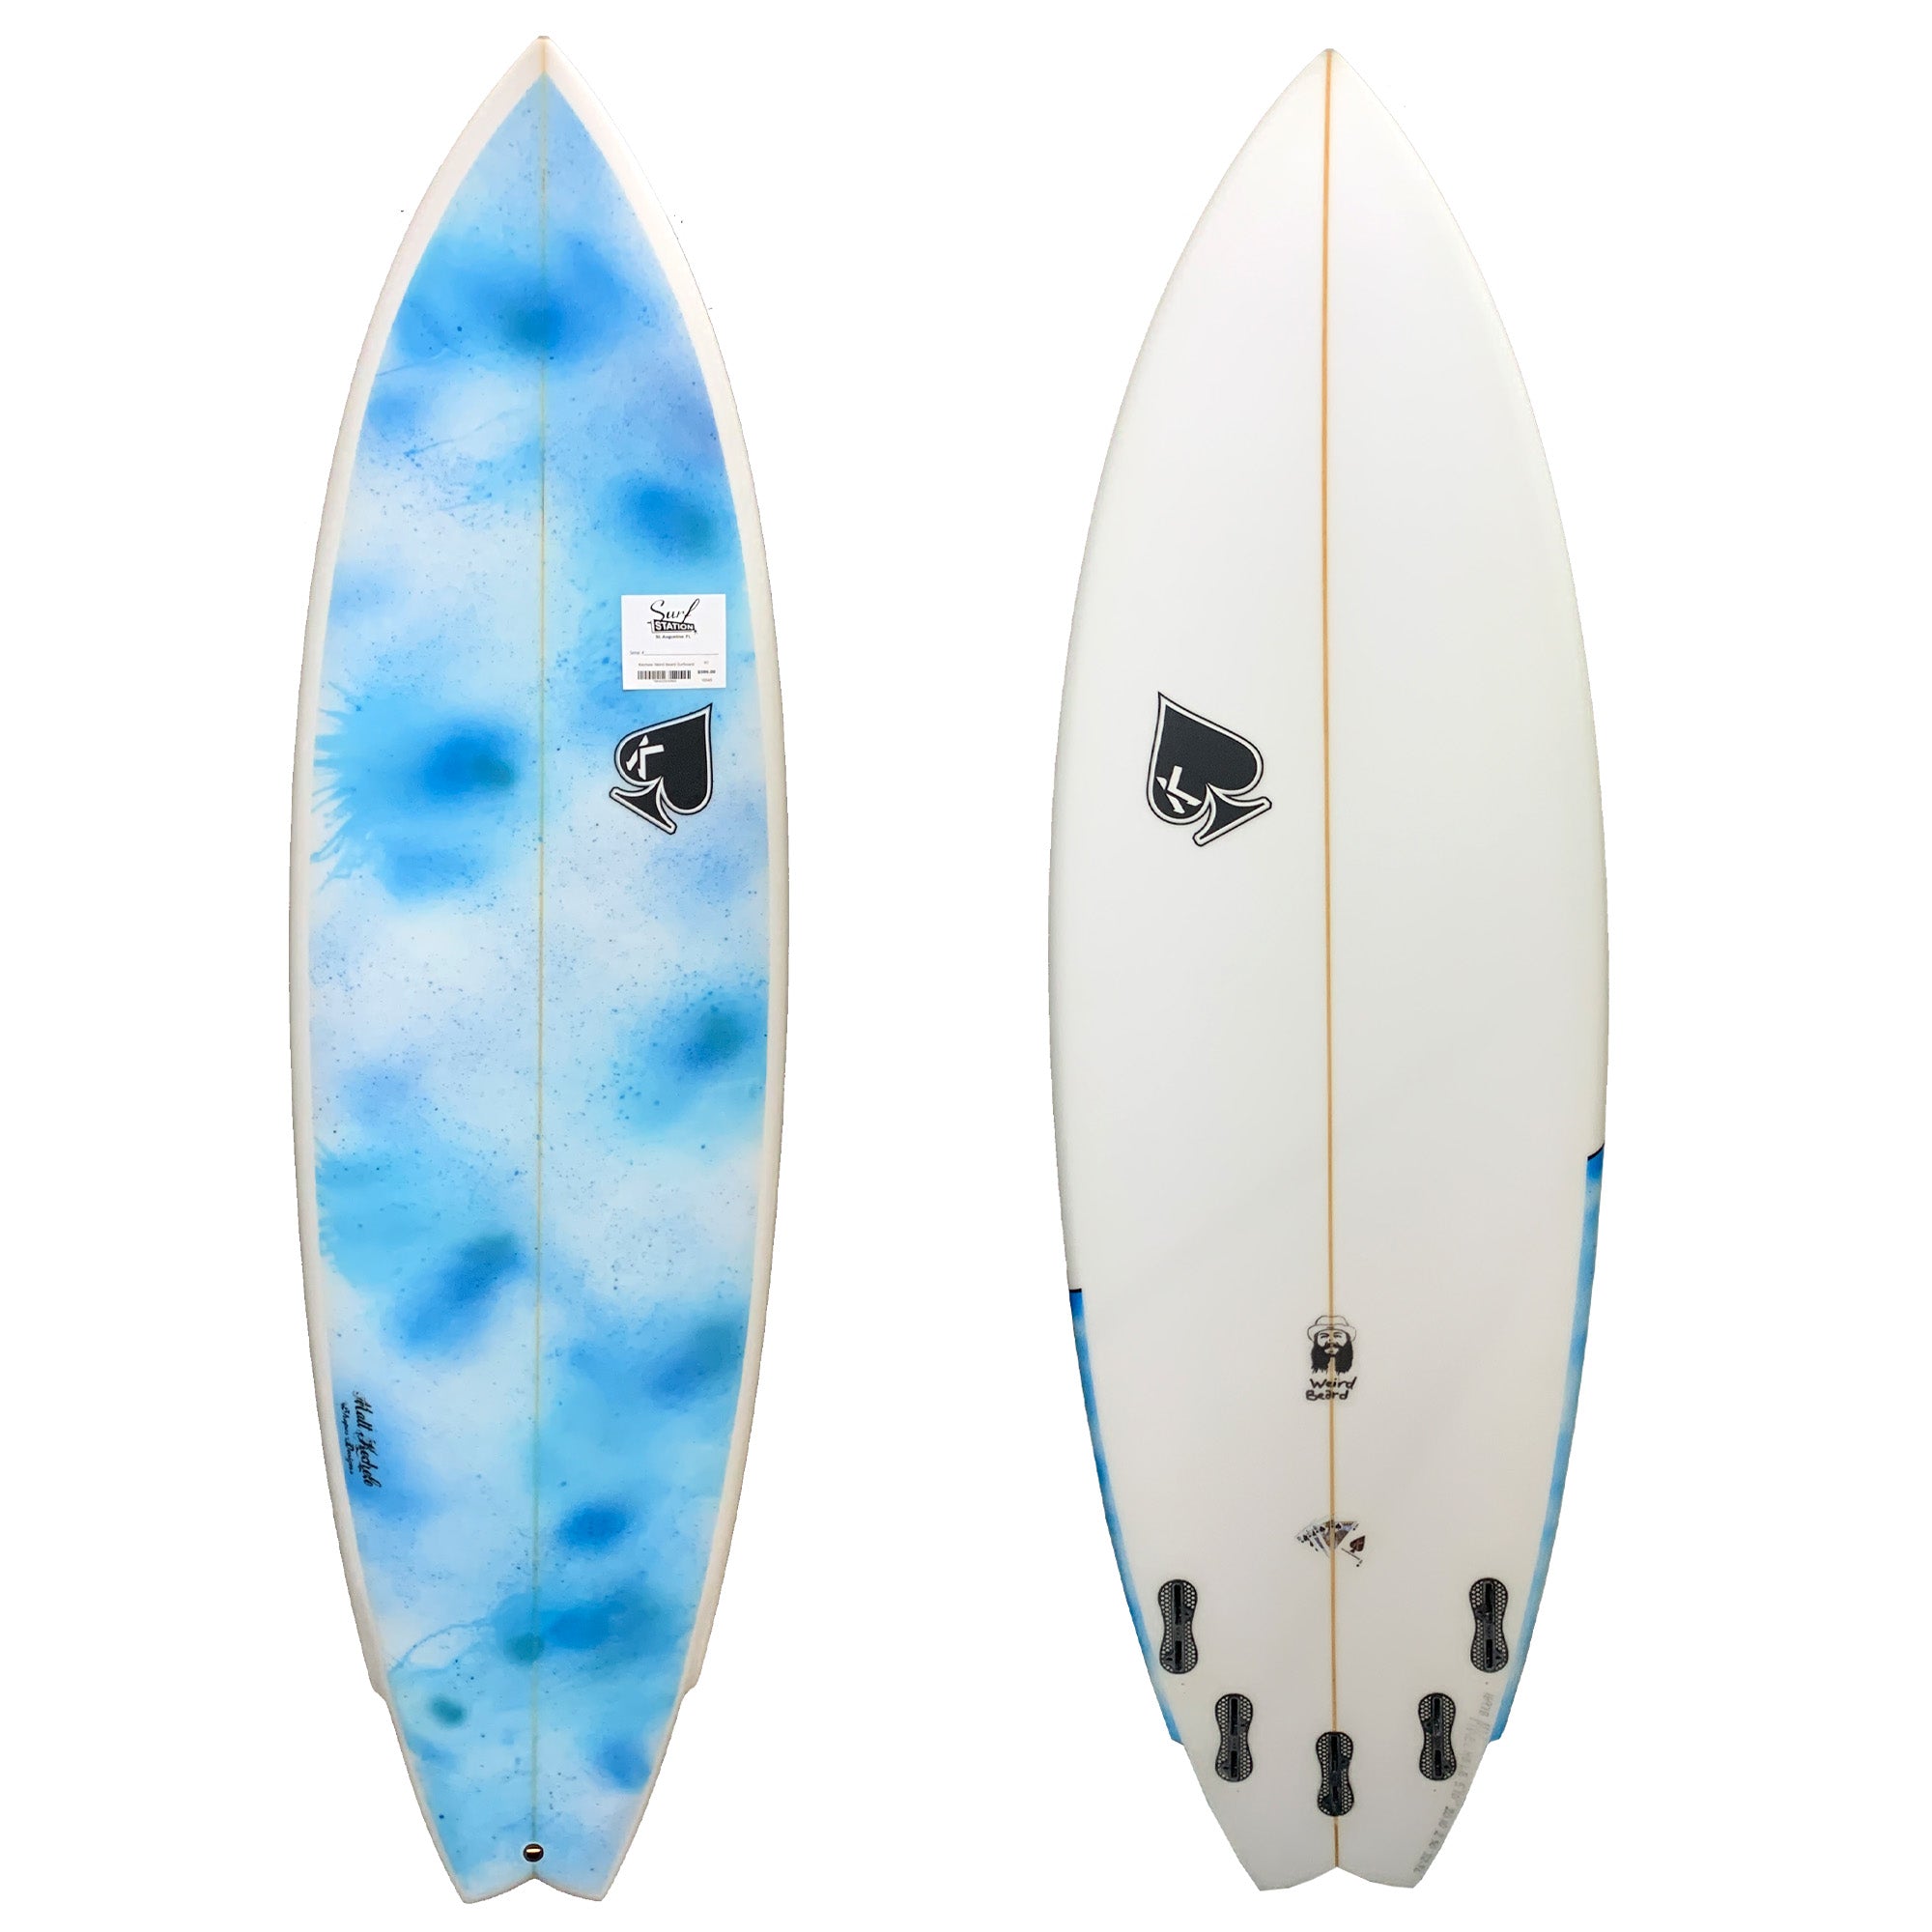 Kechele Weird Beard Surfboard - FCS II